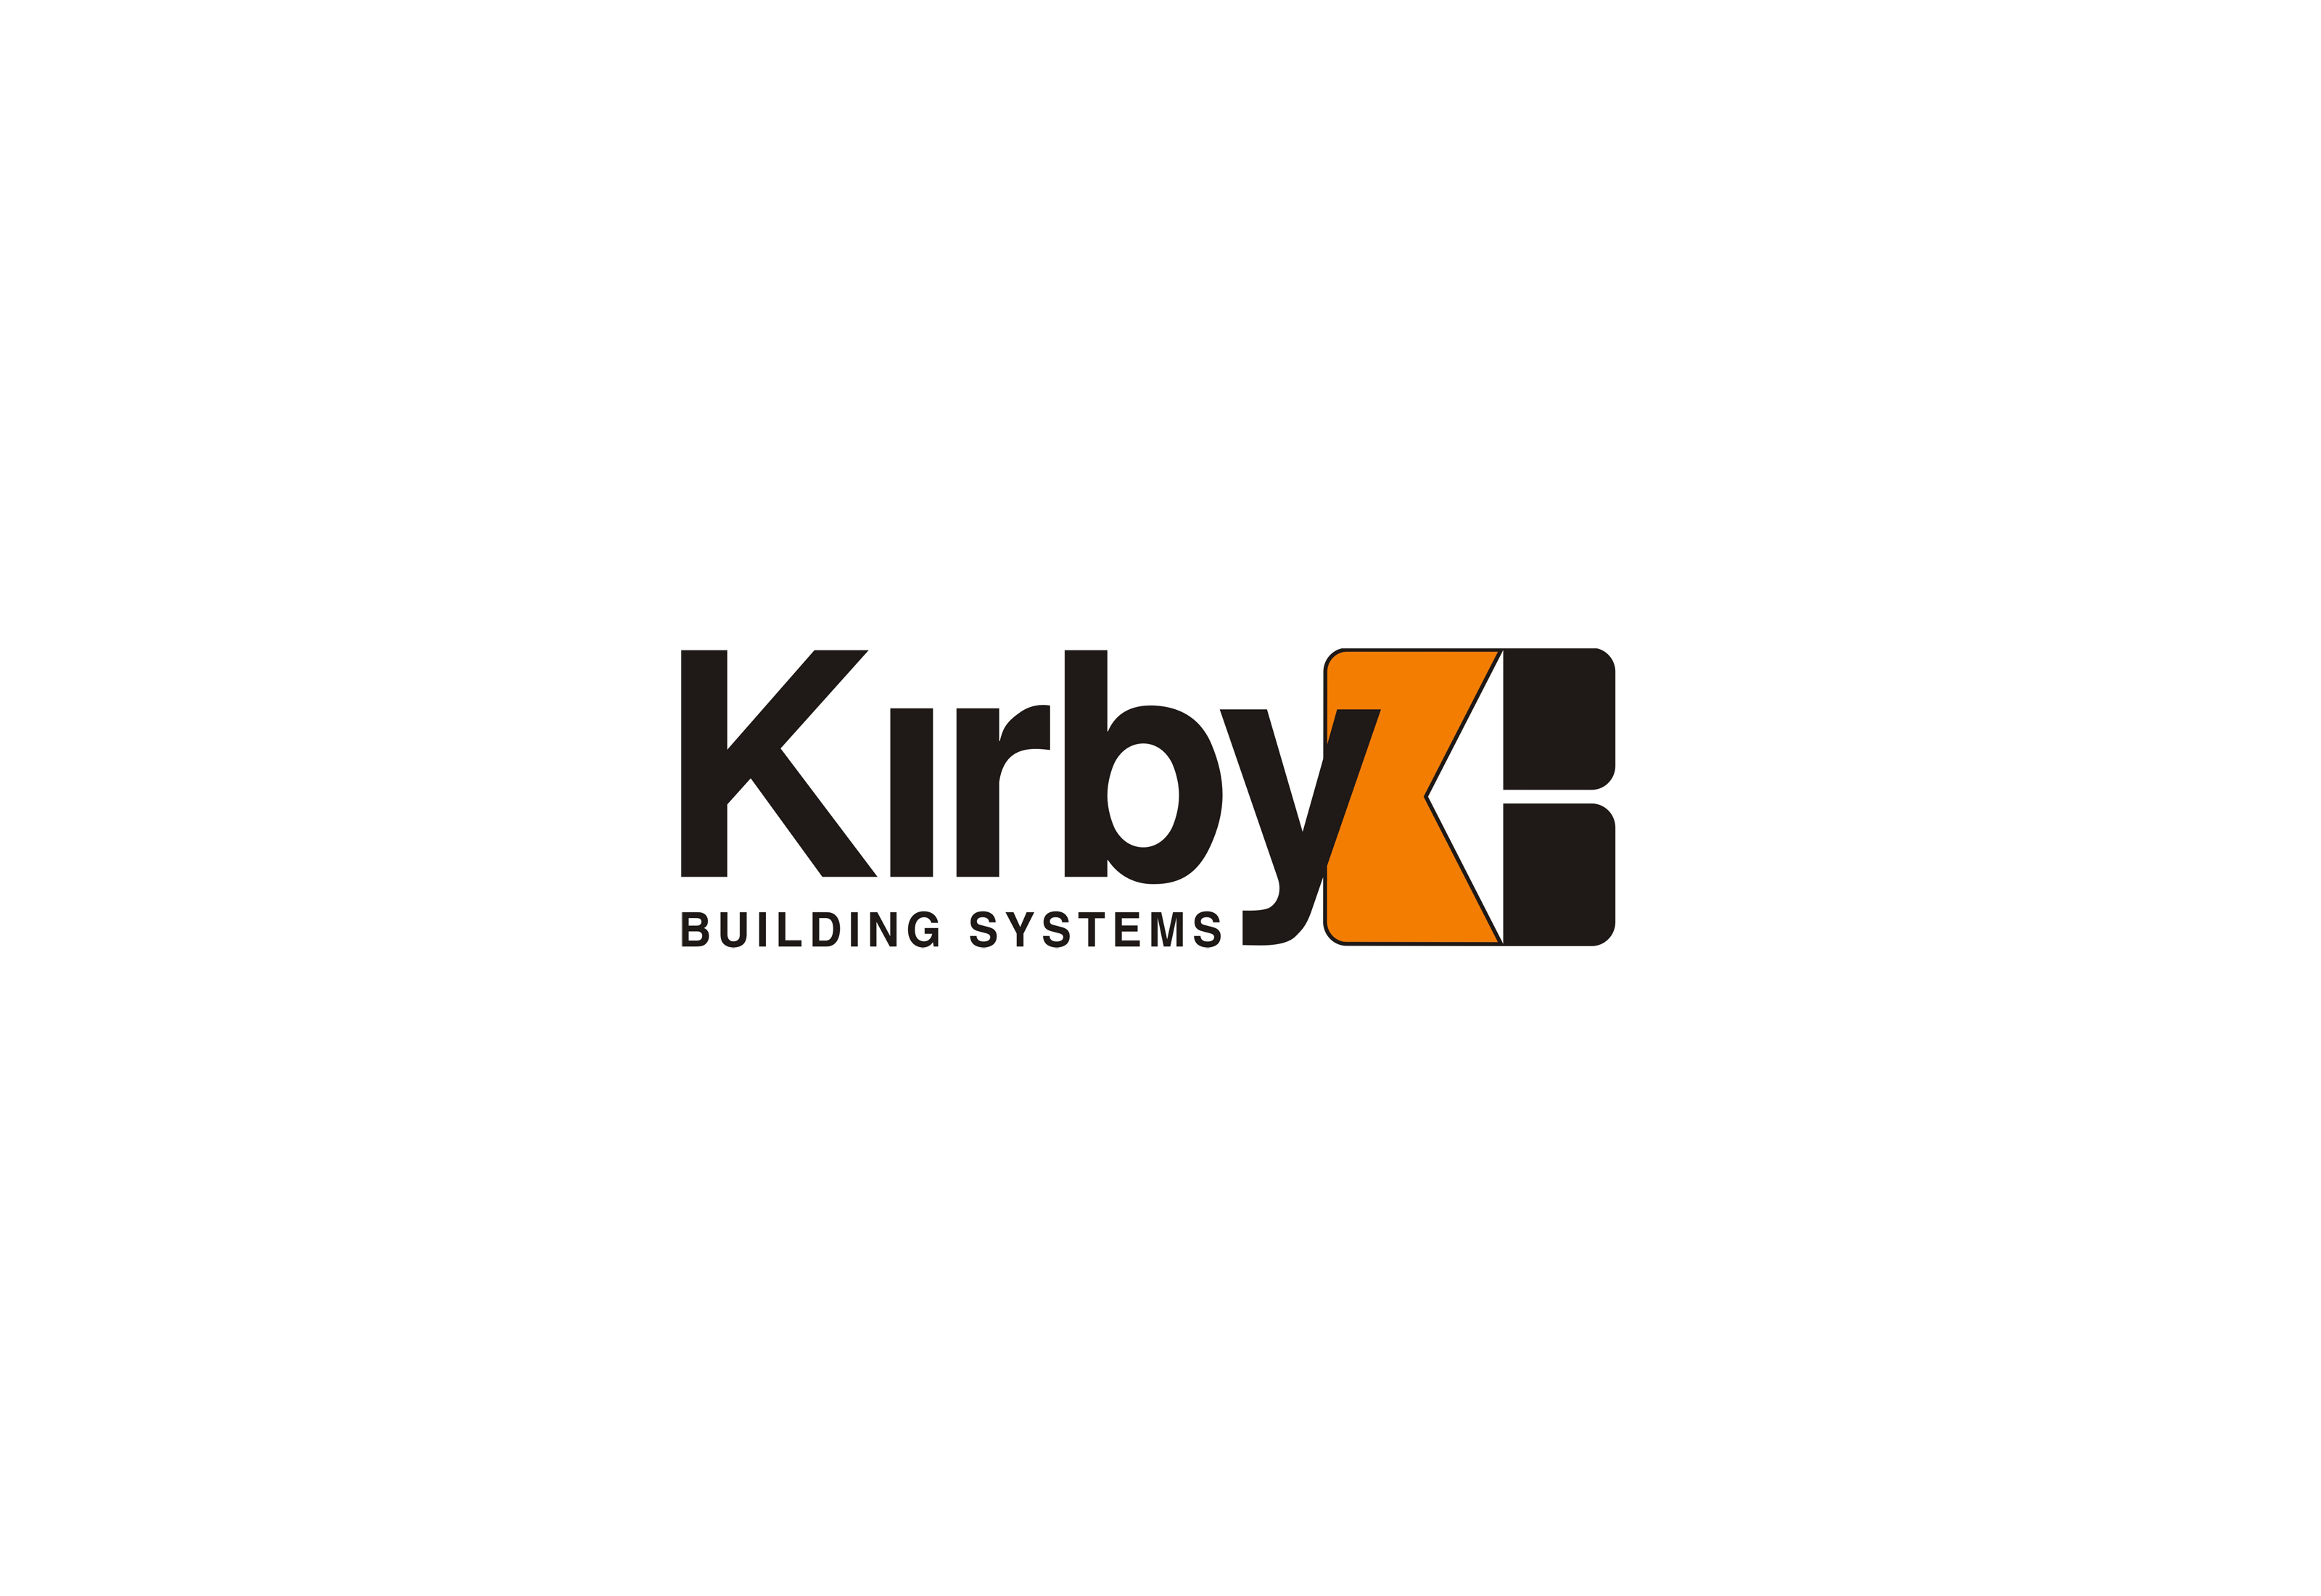 Kirby Logo - Kirby Building Systems logo | Dwglogo